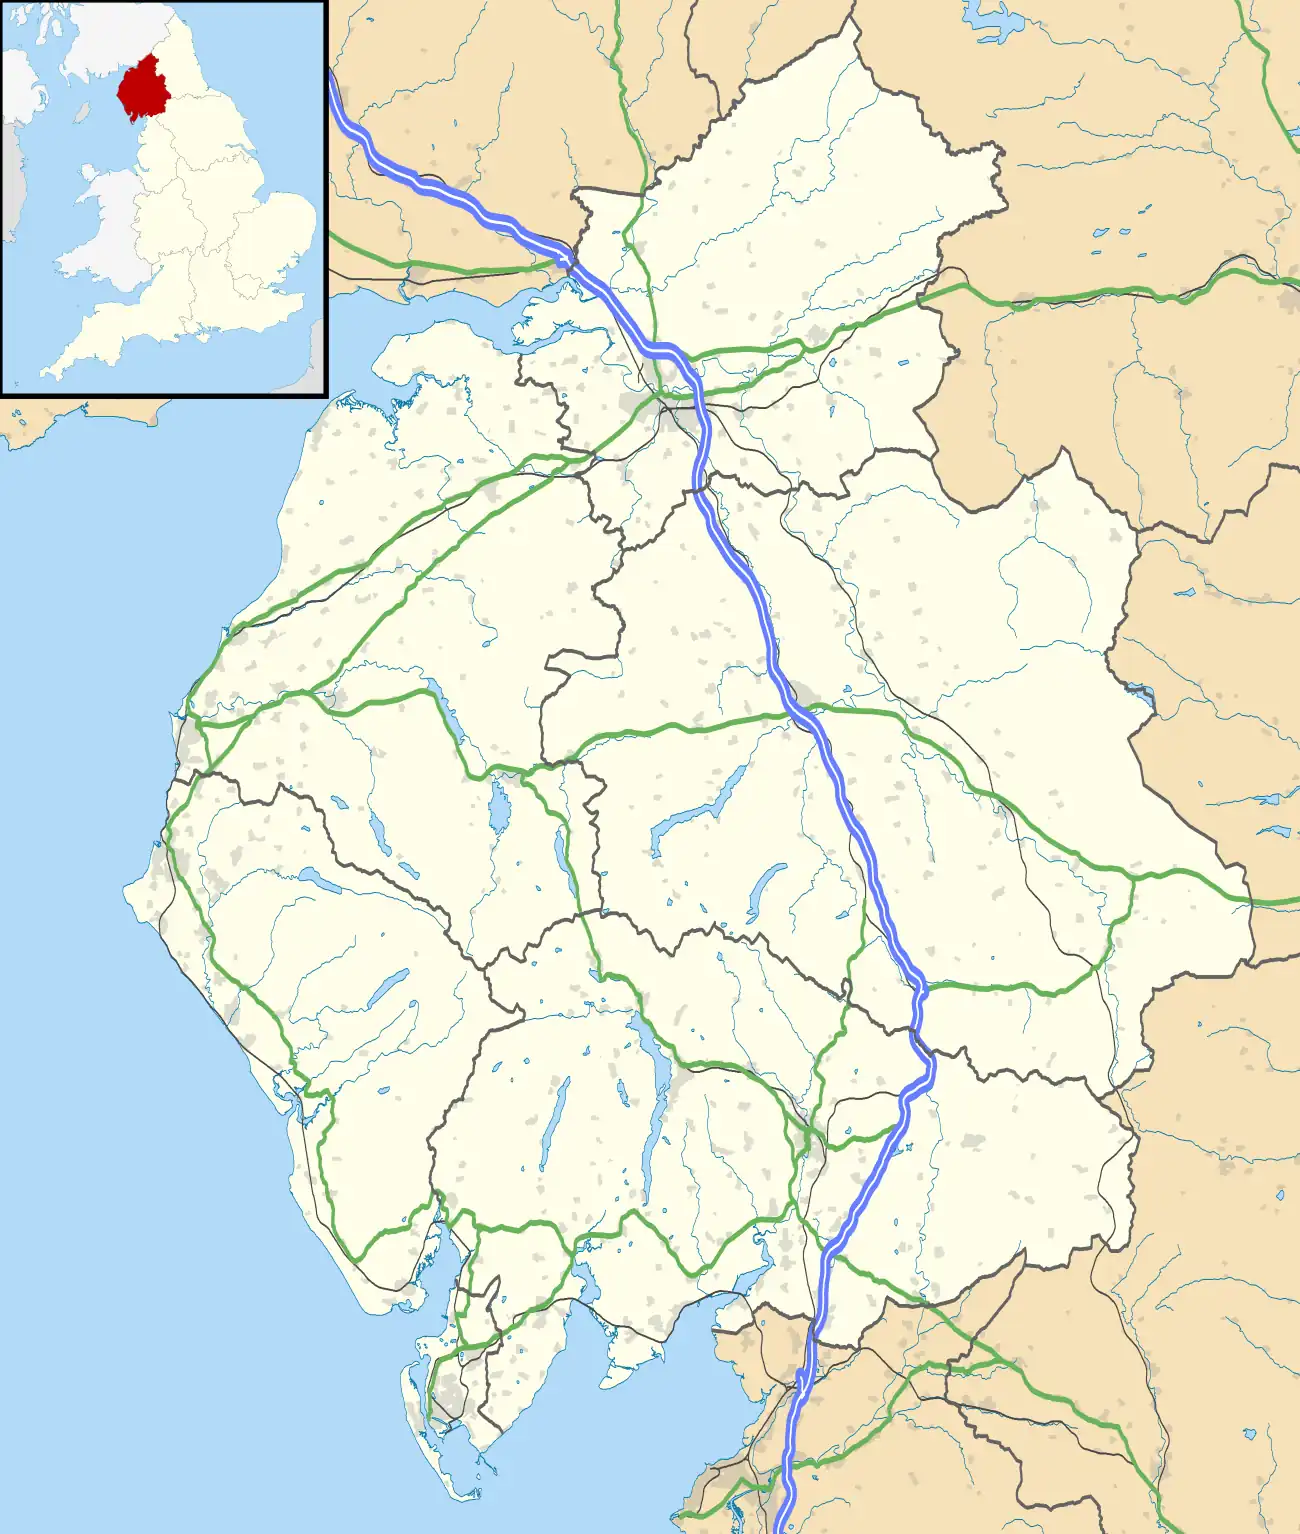 Newbiggin is located in Cumbria